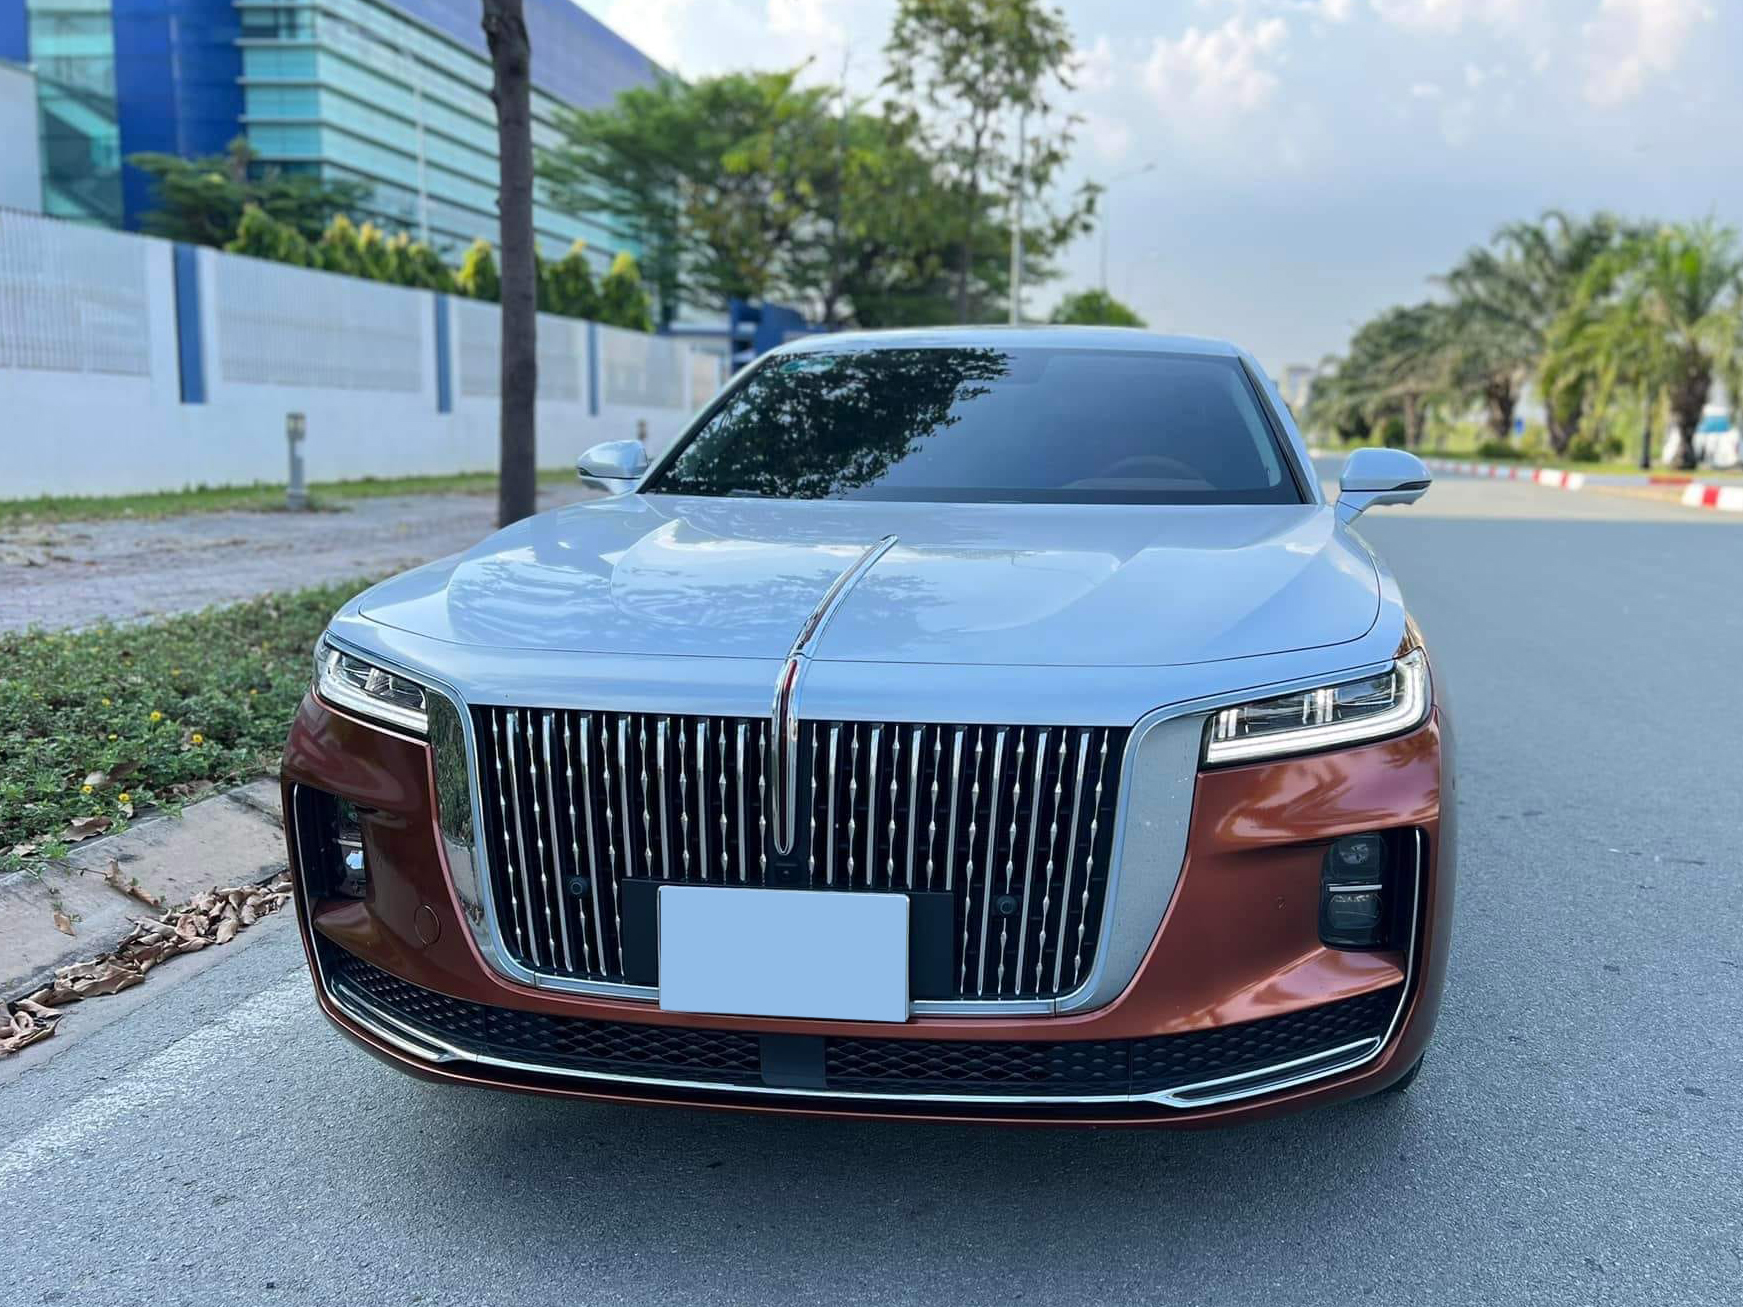 Hongqi H9 'lướt' chào giá hơn 1,6 tỷ: Rẻ hơn xe mới gần 500 triệu, đổi màu kiểu Maybach, được ví như 'Rolls-Royce giá rẻ' - Ảnh 4.